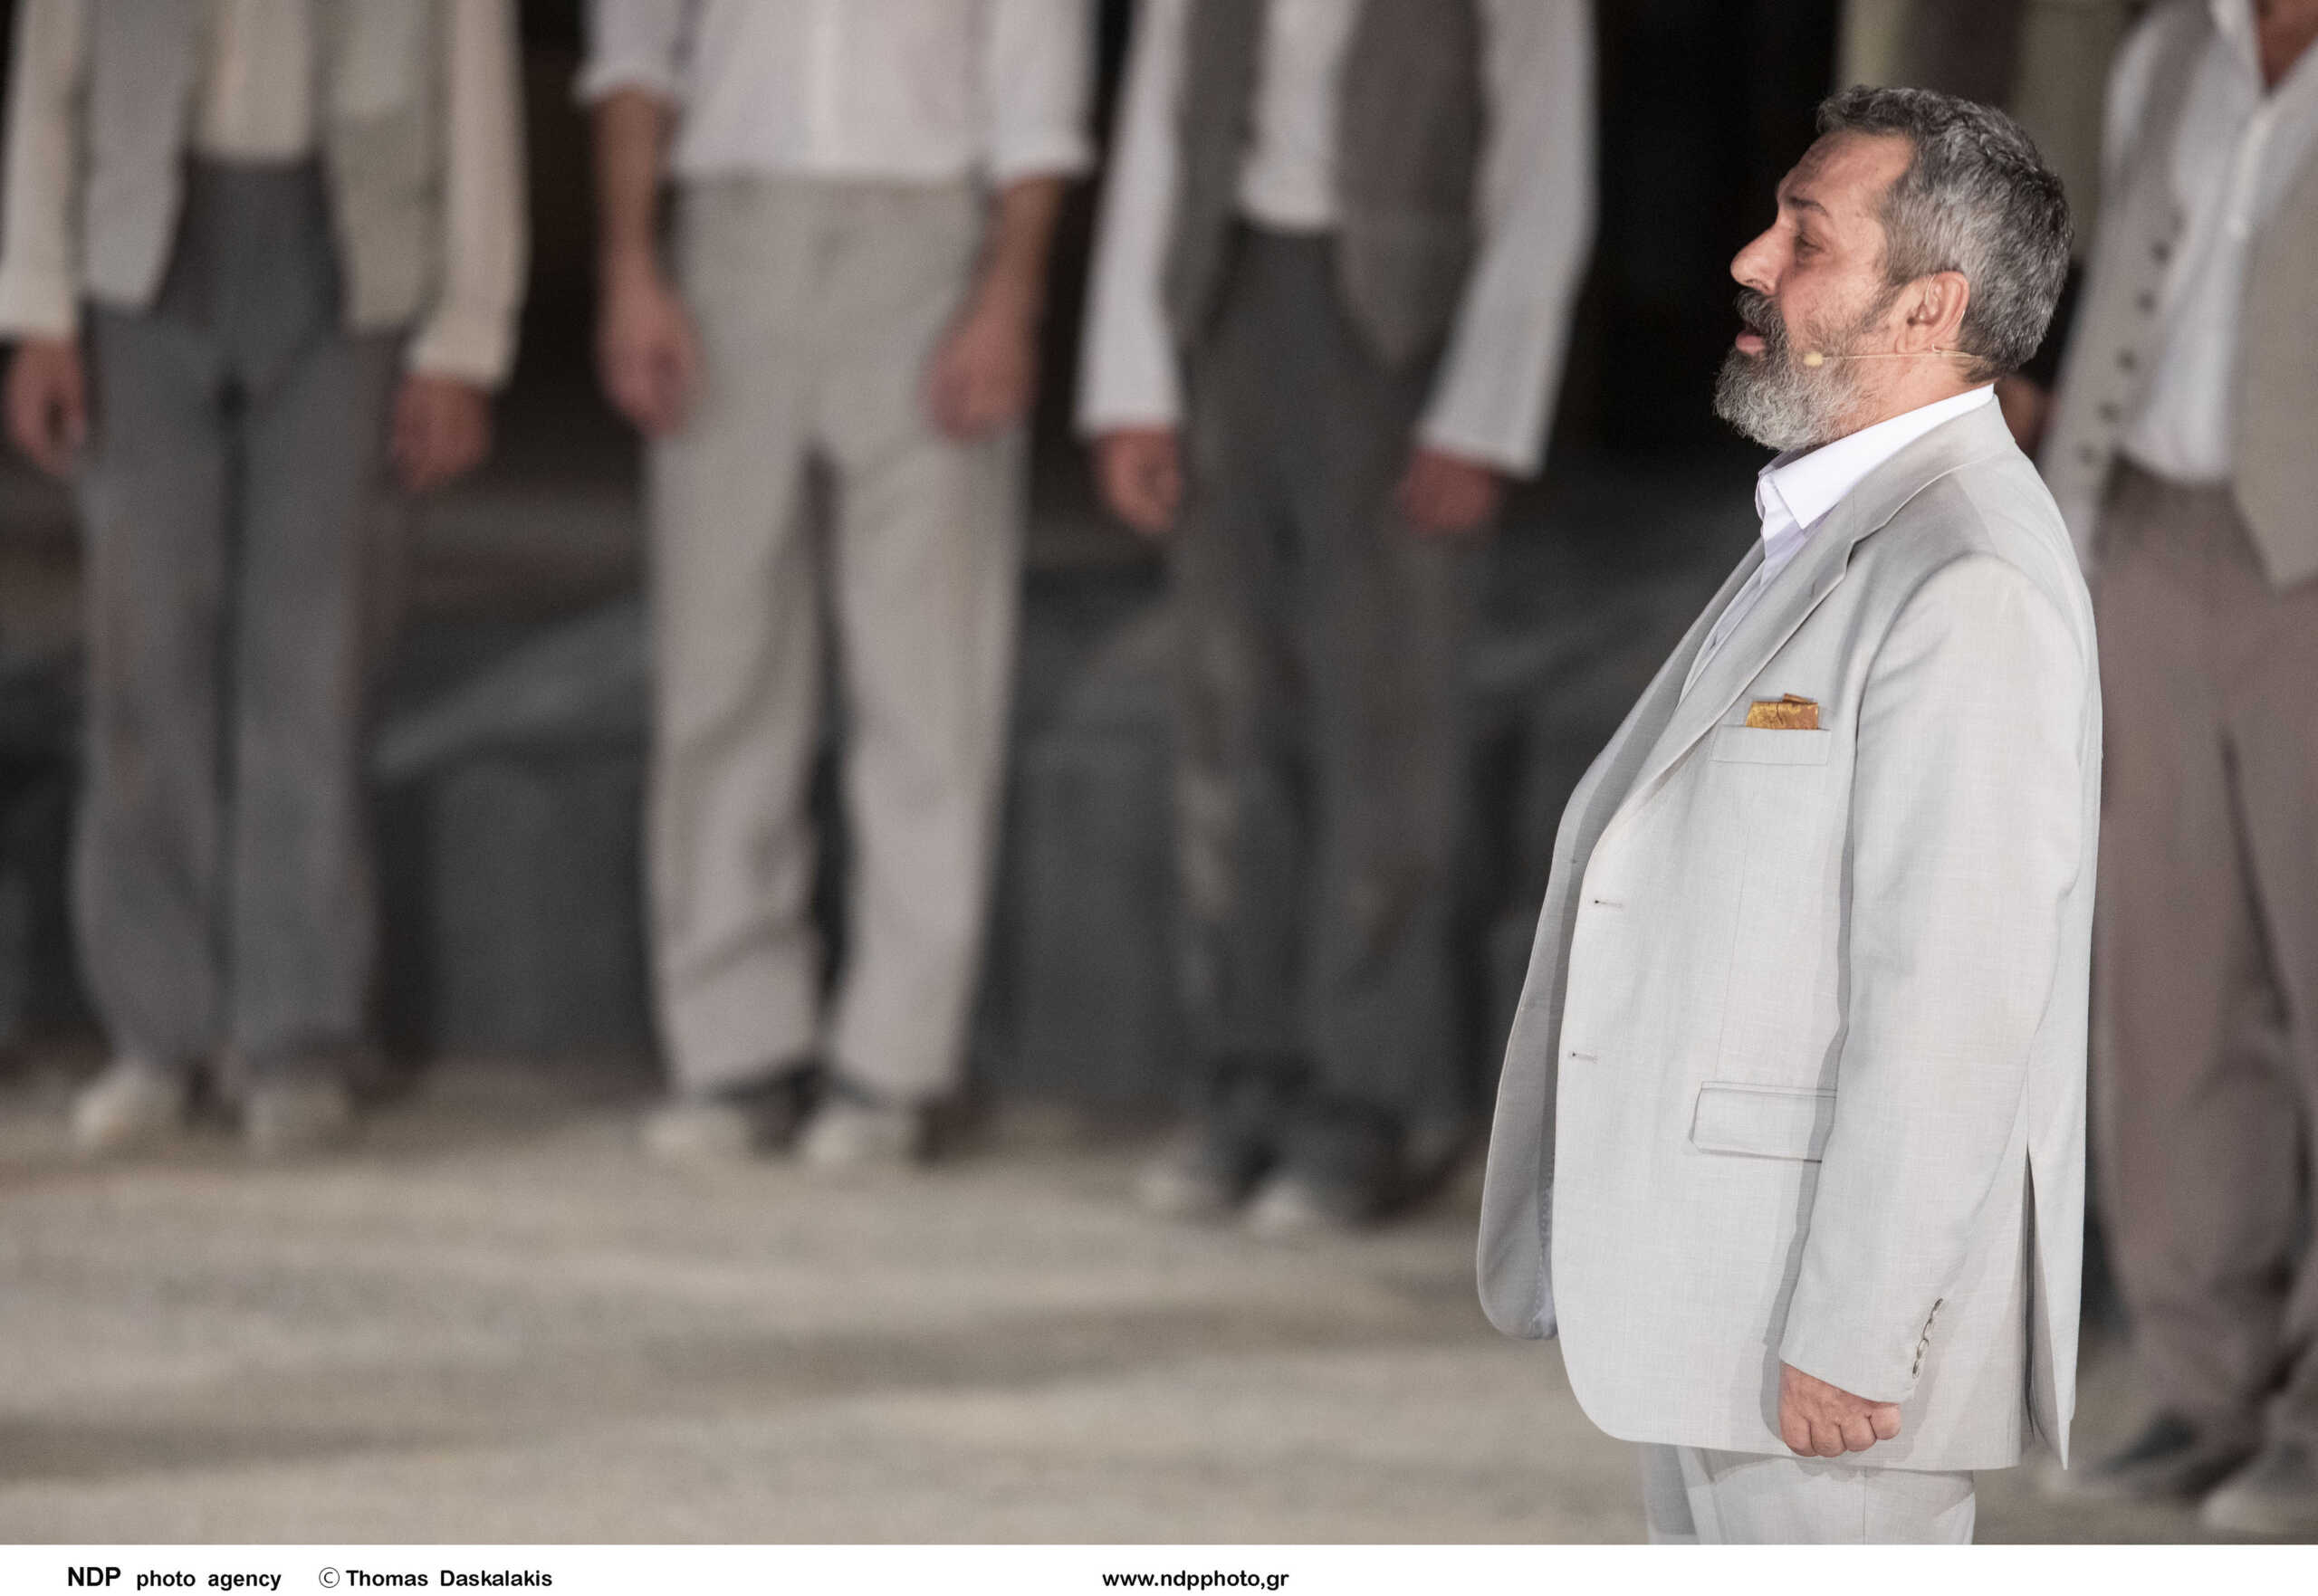 Στο νοσοκομείο ο ηθοποιός Χρήστος Χατζηπαναγιώτης – Διακόπτεται η παράσταση «Μπαμπάδες με ρούμι» μέχρι τέλος Μαρτίου